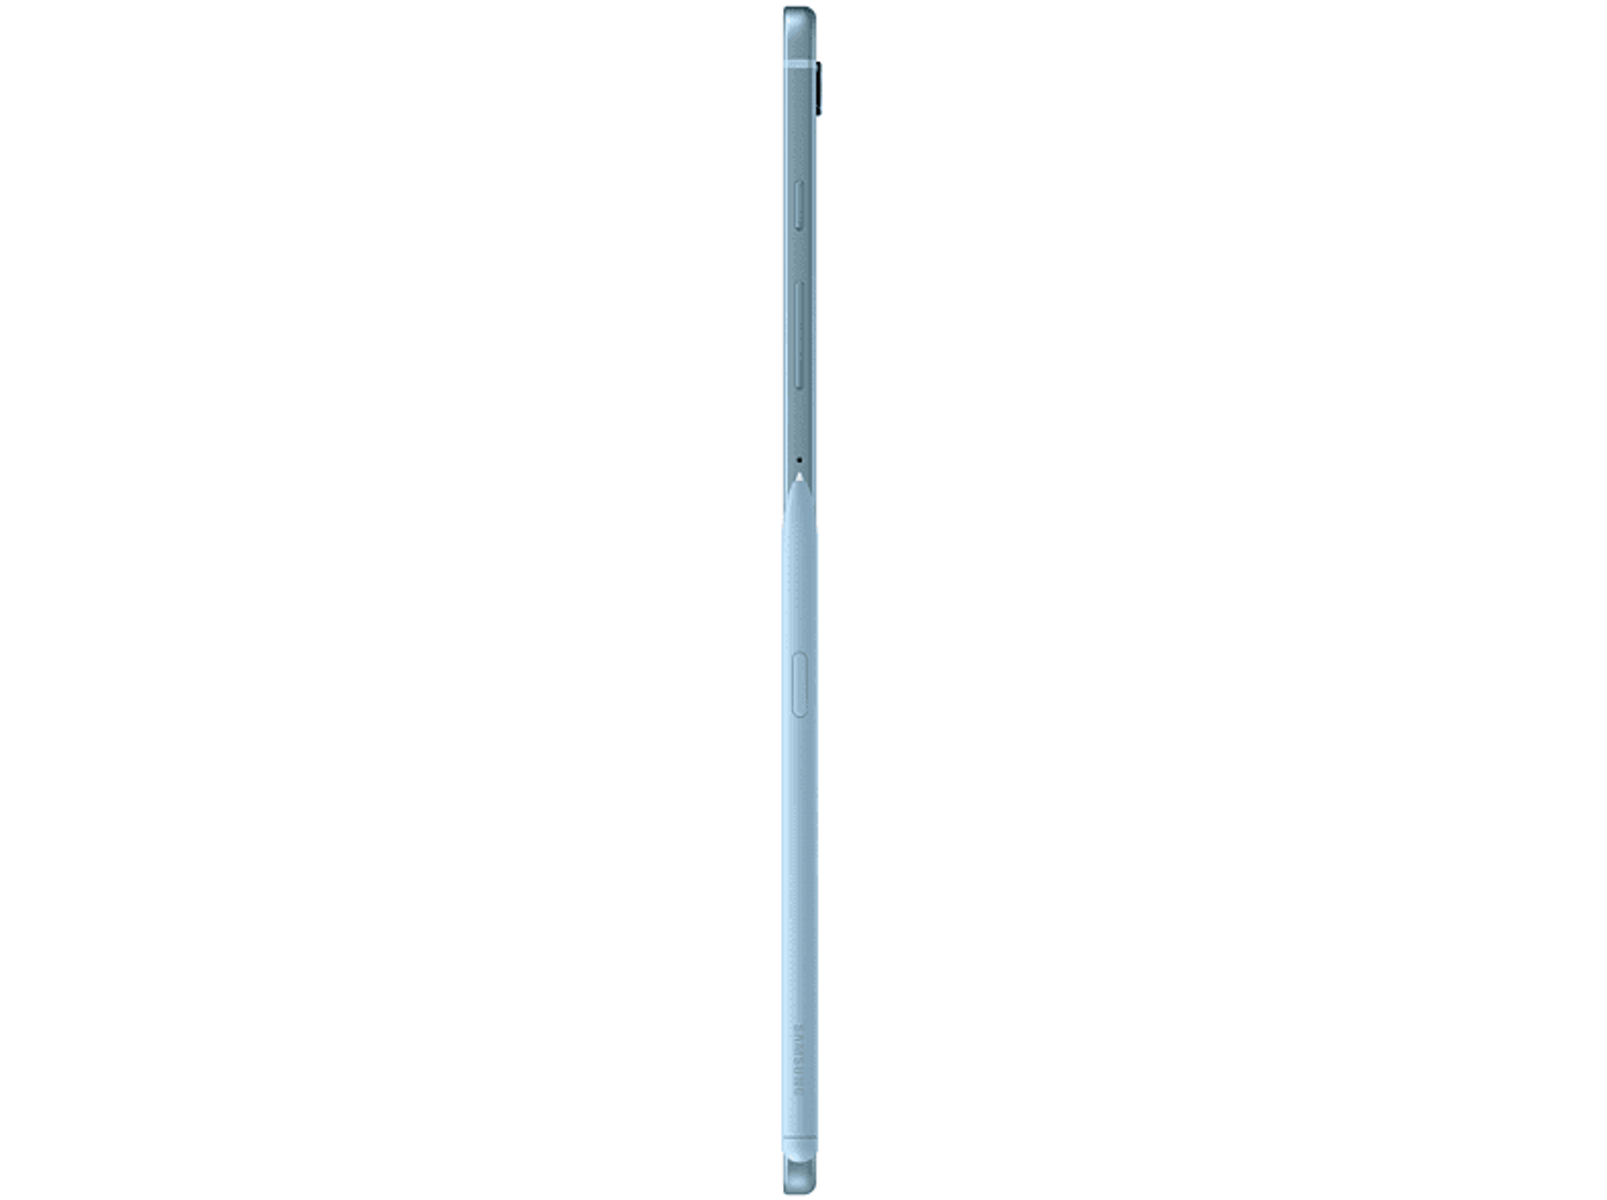 SAMSUNG Galaxy Tab S6 Lite 128 10,4 Zoll, Blau 2022, Tablet, GB